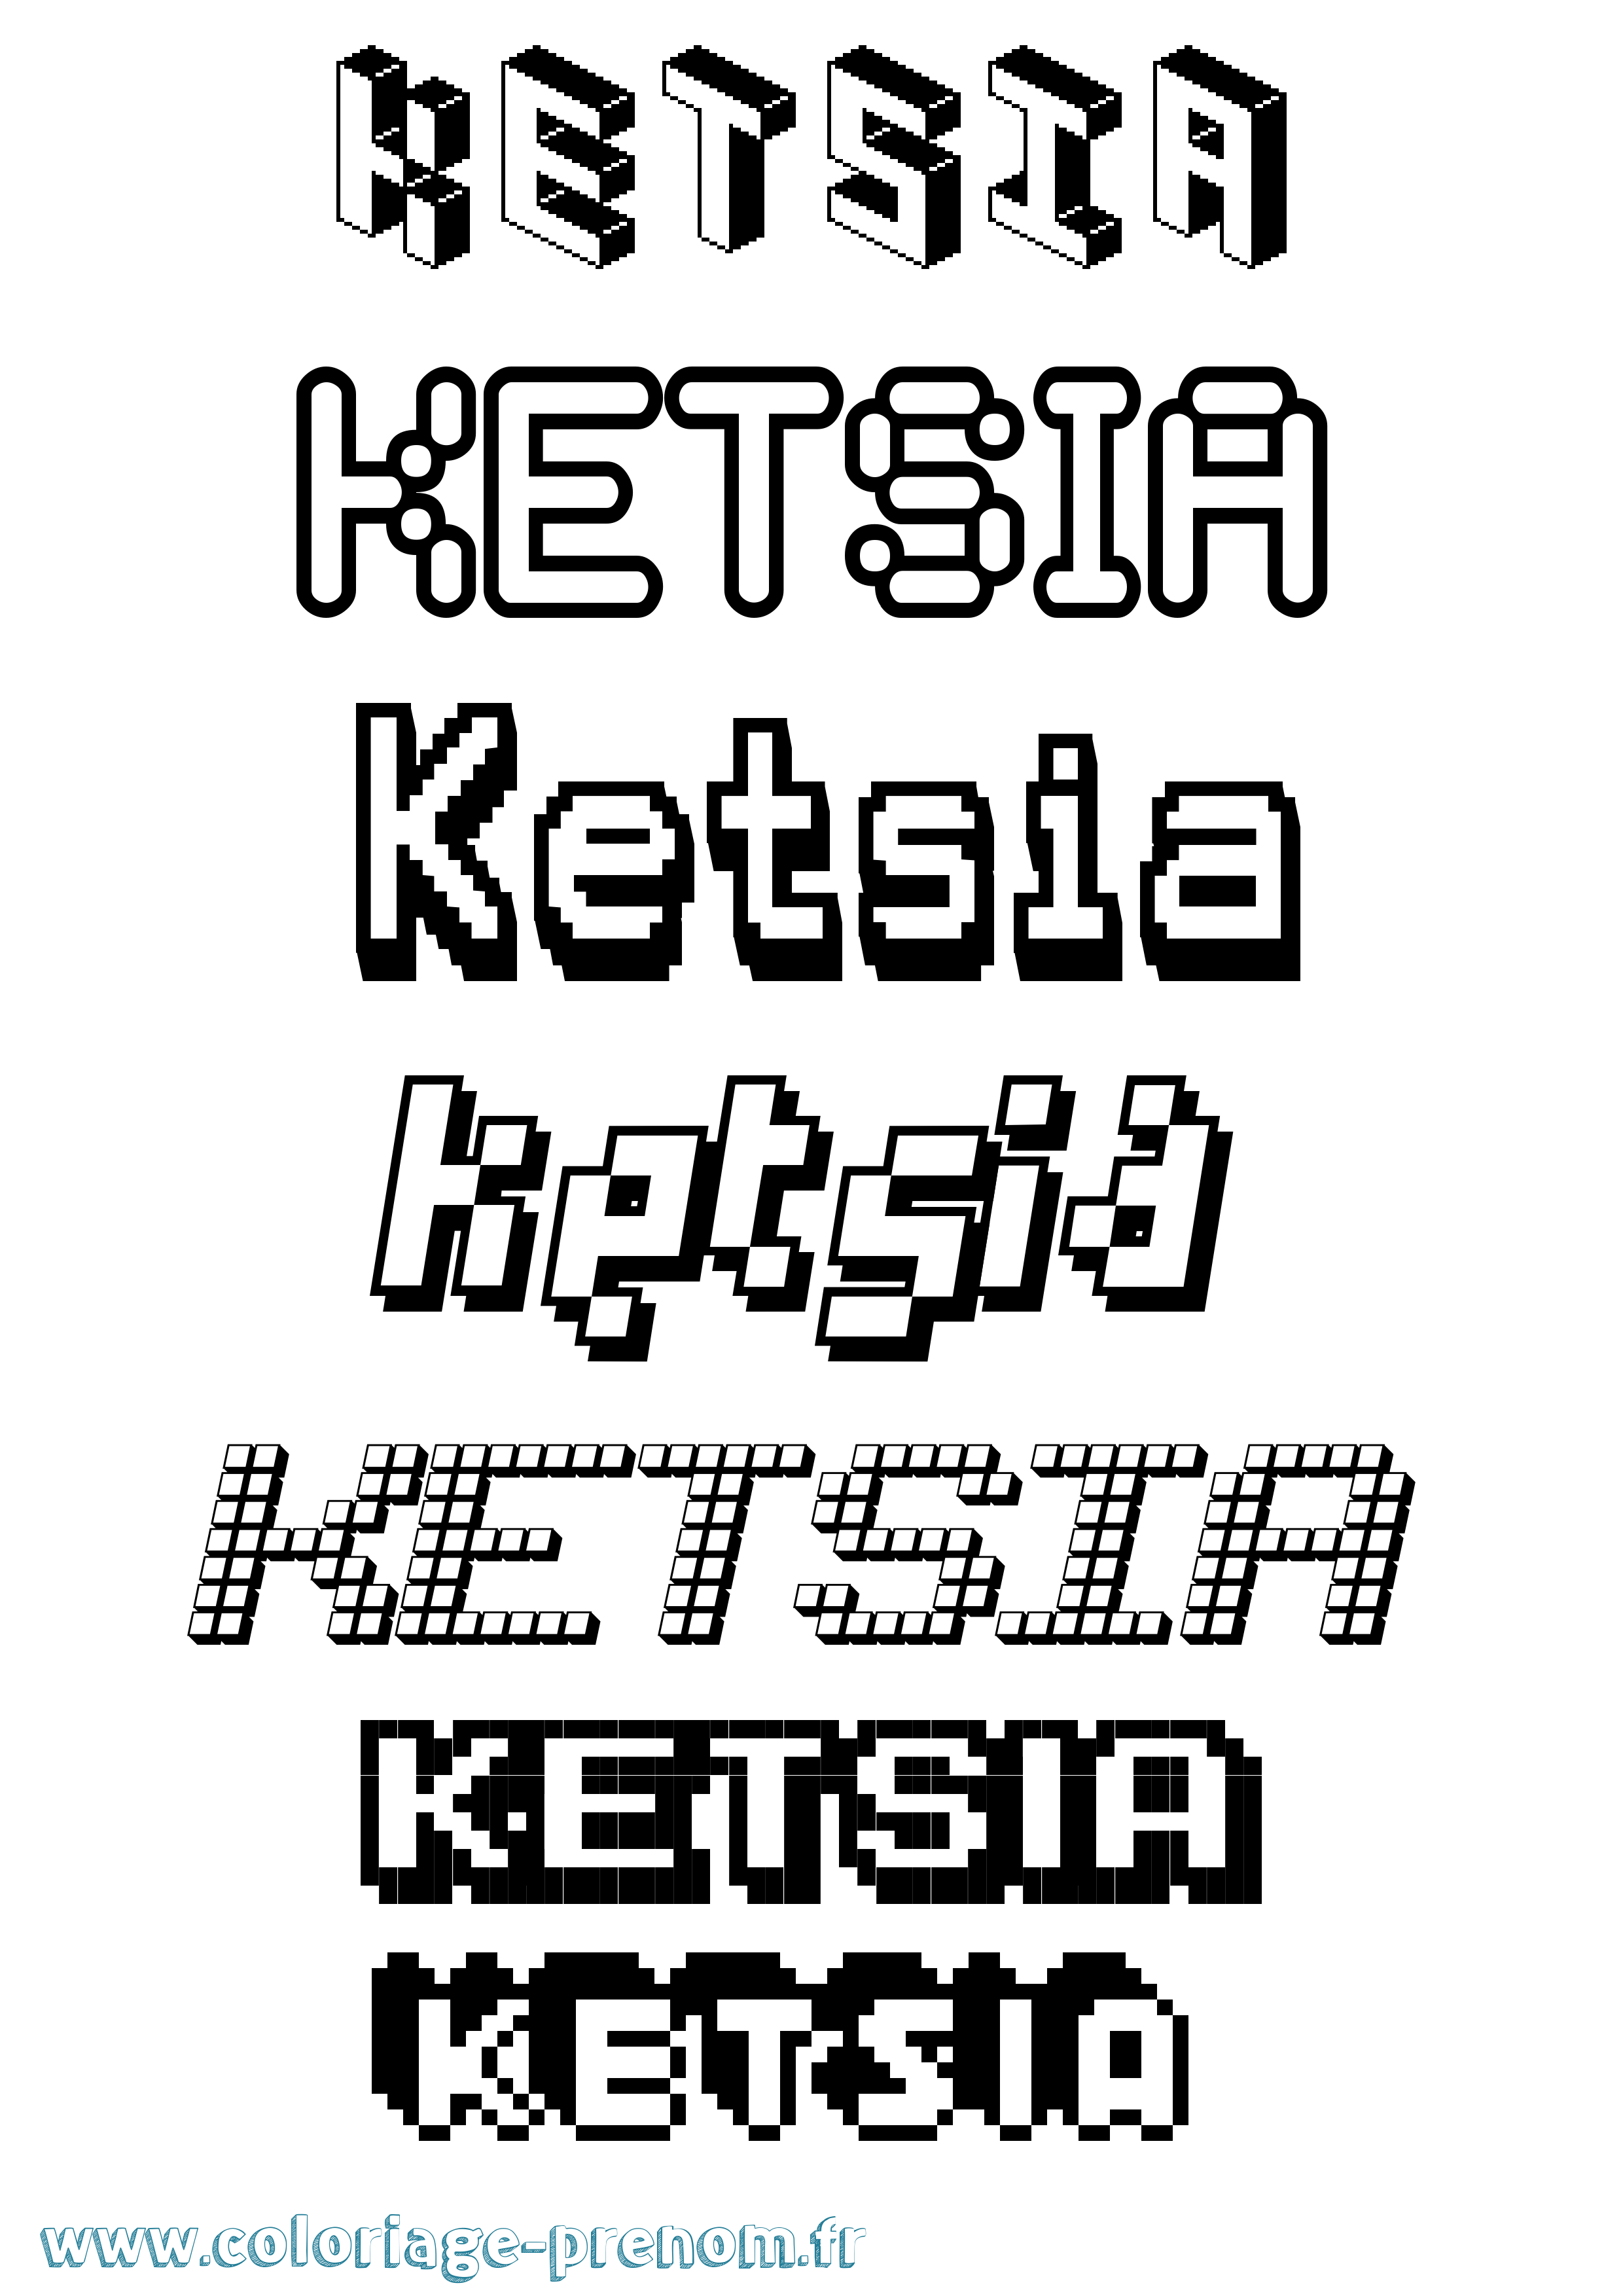 Coloriage prénom Ketsia Pixel